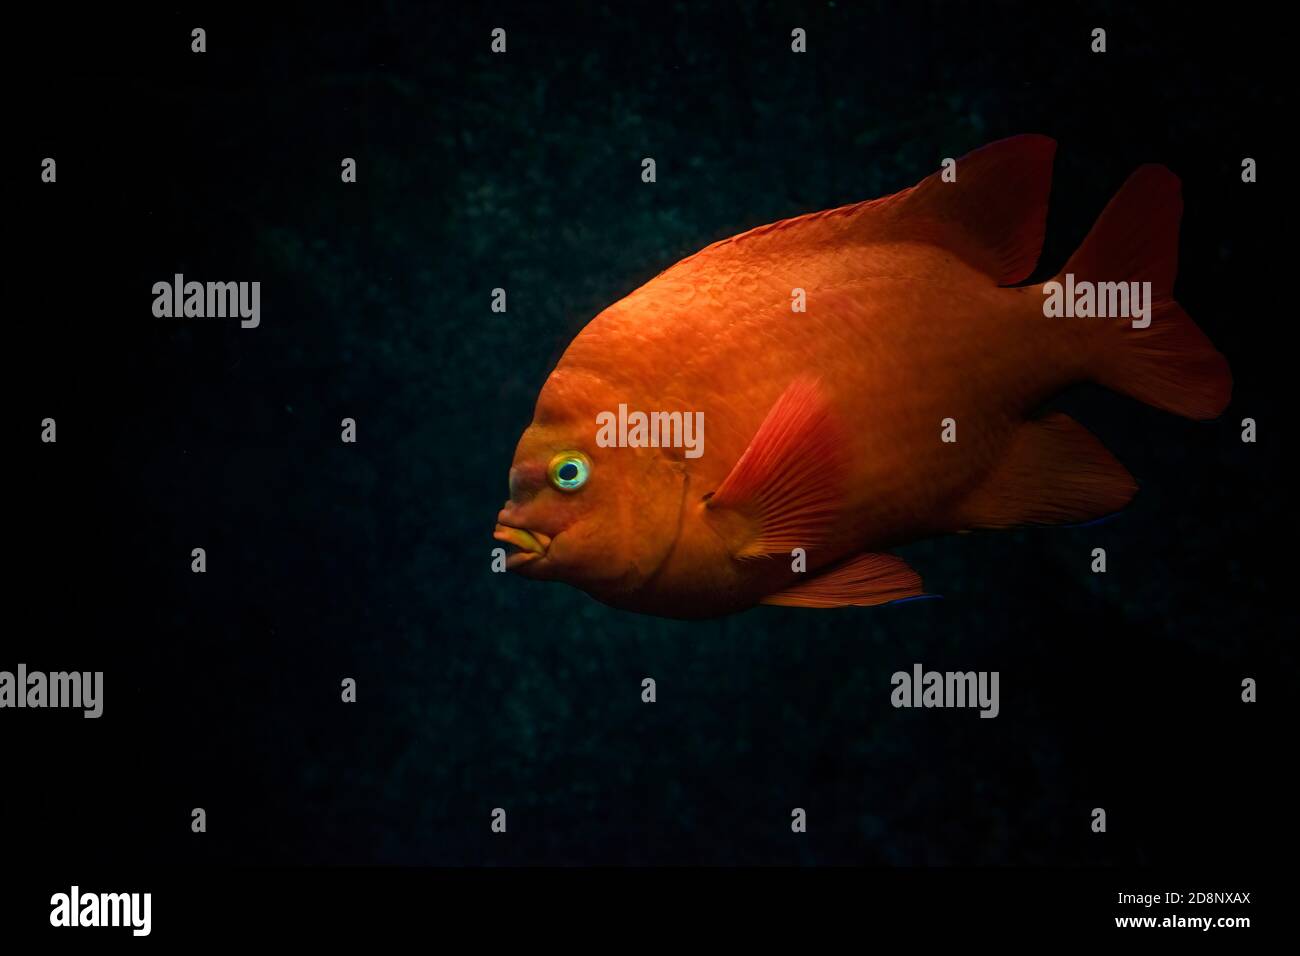 Rouge orange Garibaldi ou Garibaldi damégoïste (Hypsypop rubicundus) nageant dans l'océan. Fond sombre. Banque D'Images